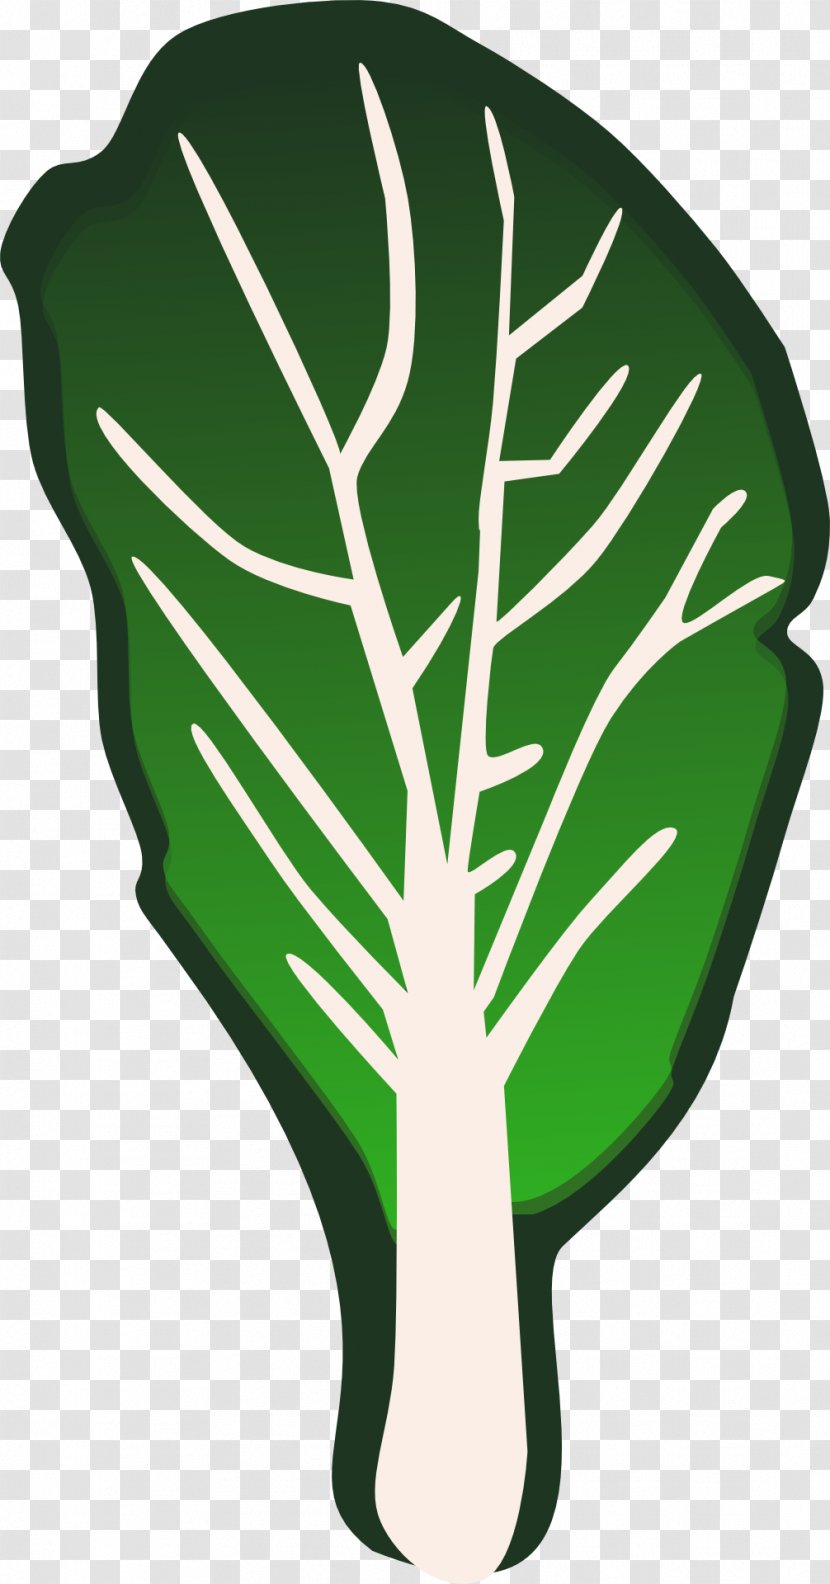 Leaf Vegetable Lettuce Clip Art - Green Cabbage Leaves Transparent PNG